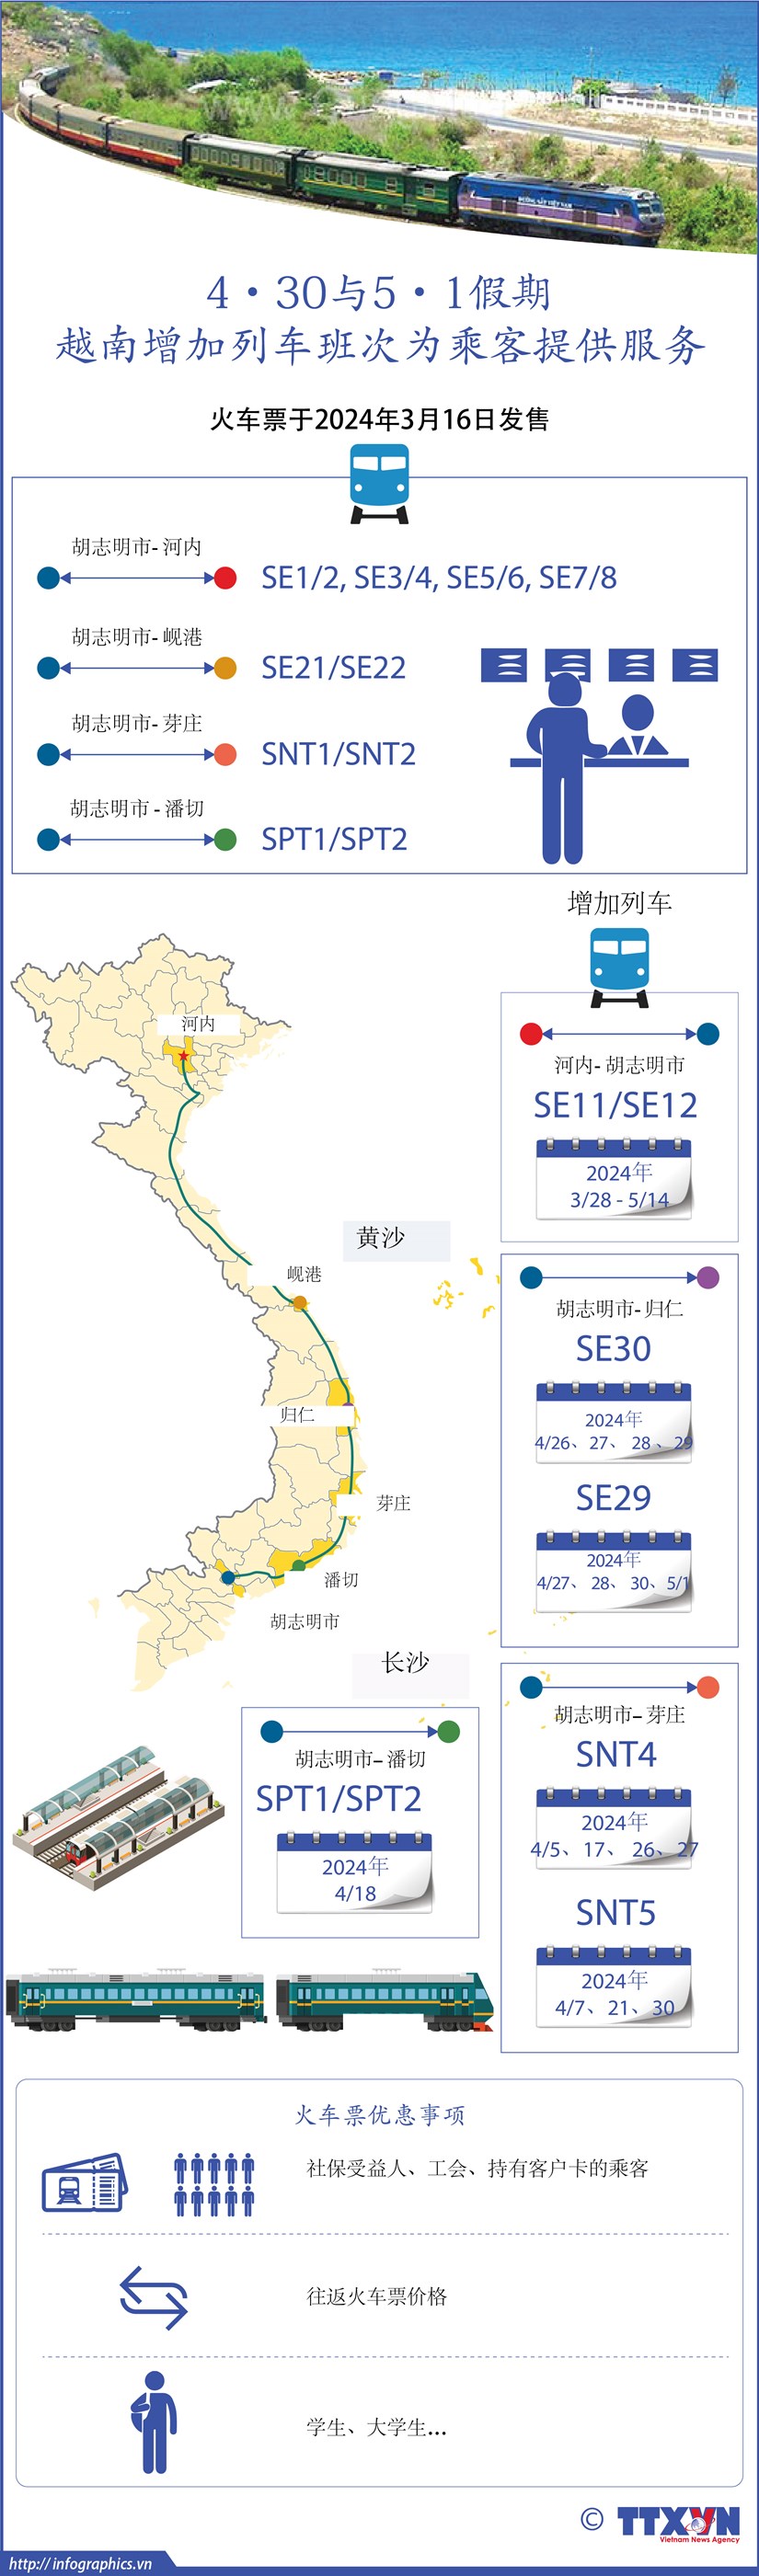 图表新闻：4·30与5·1假期越南增加列车班次为乘客提供服务 hinh anh 1